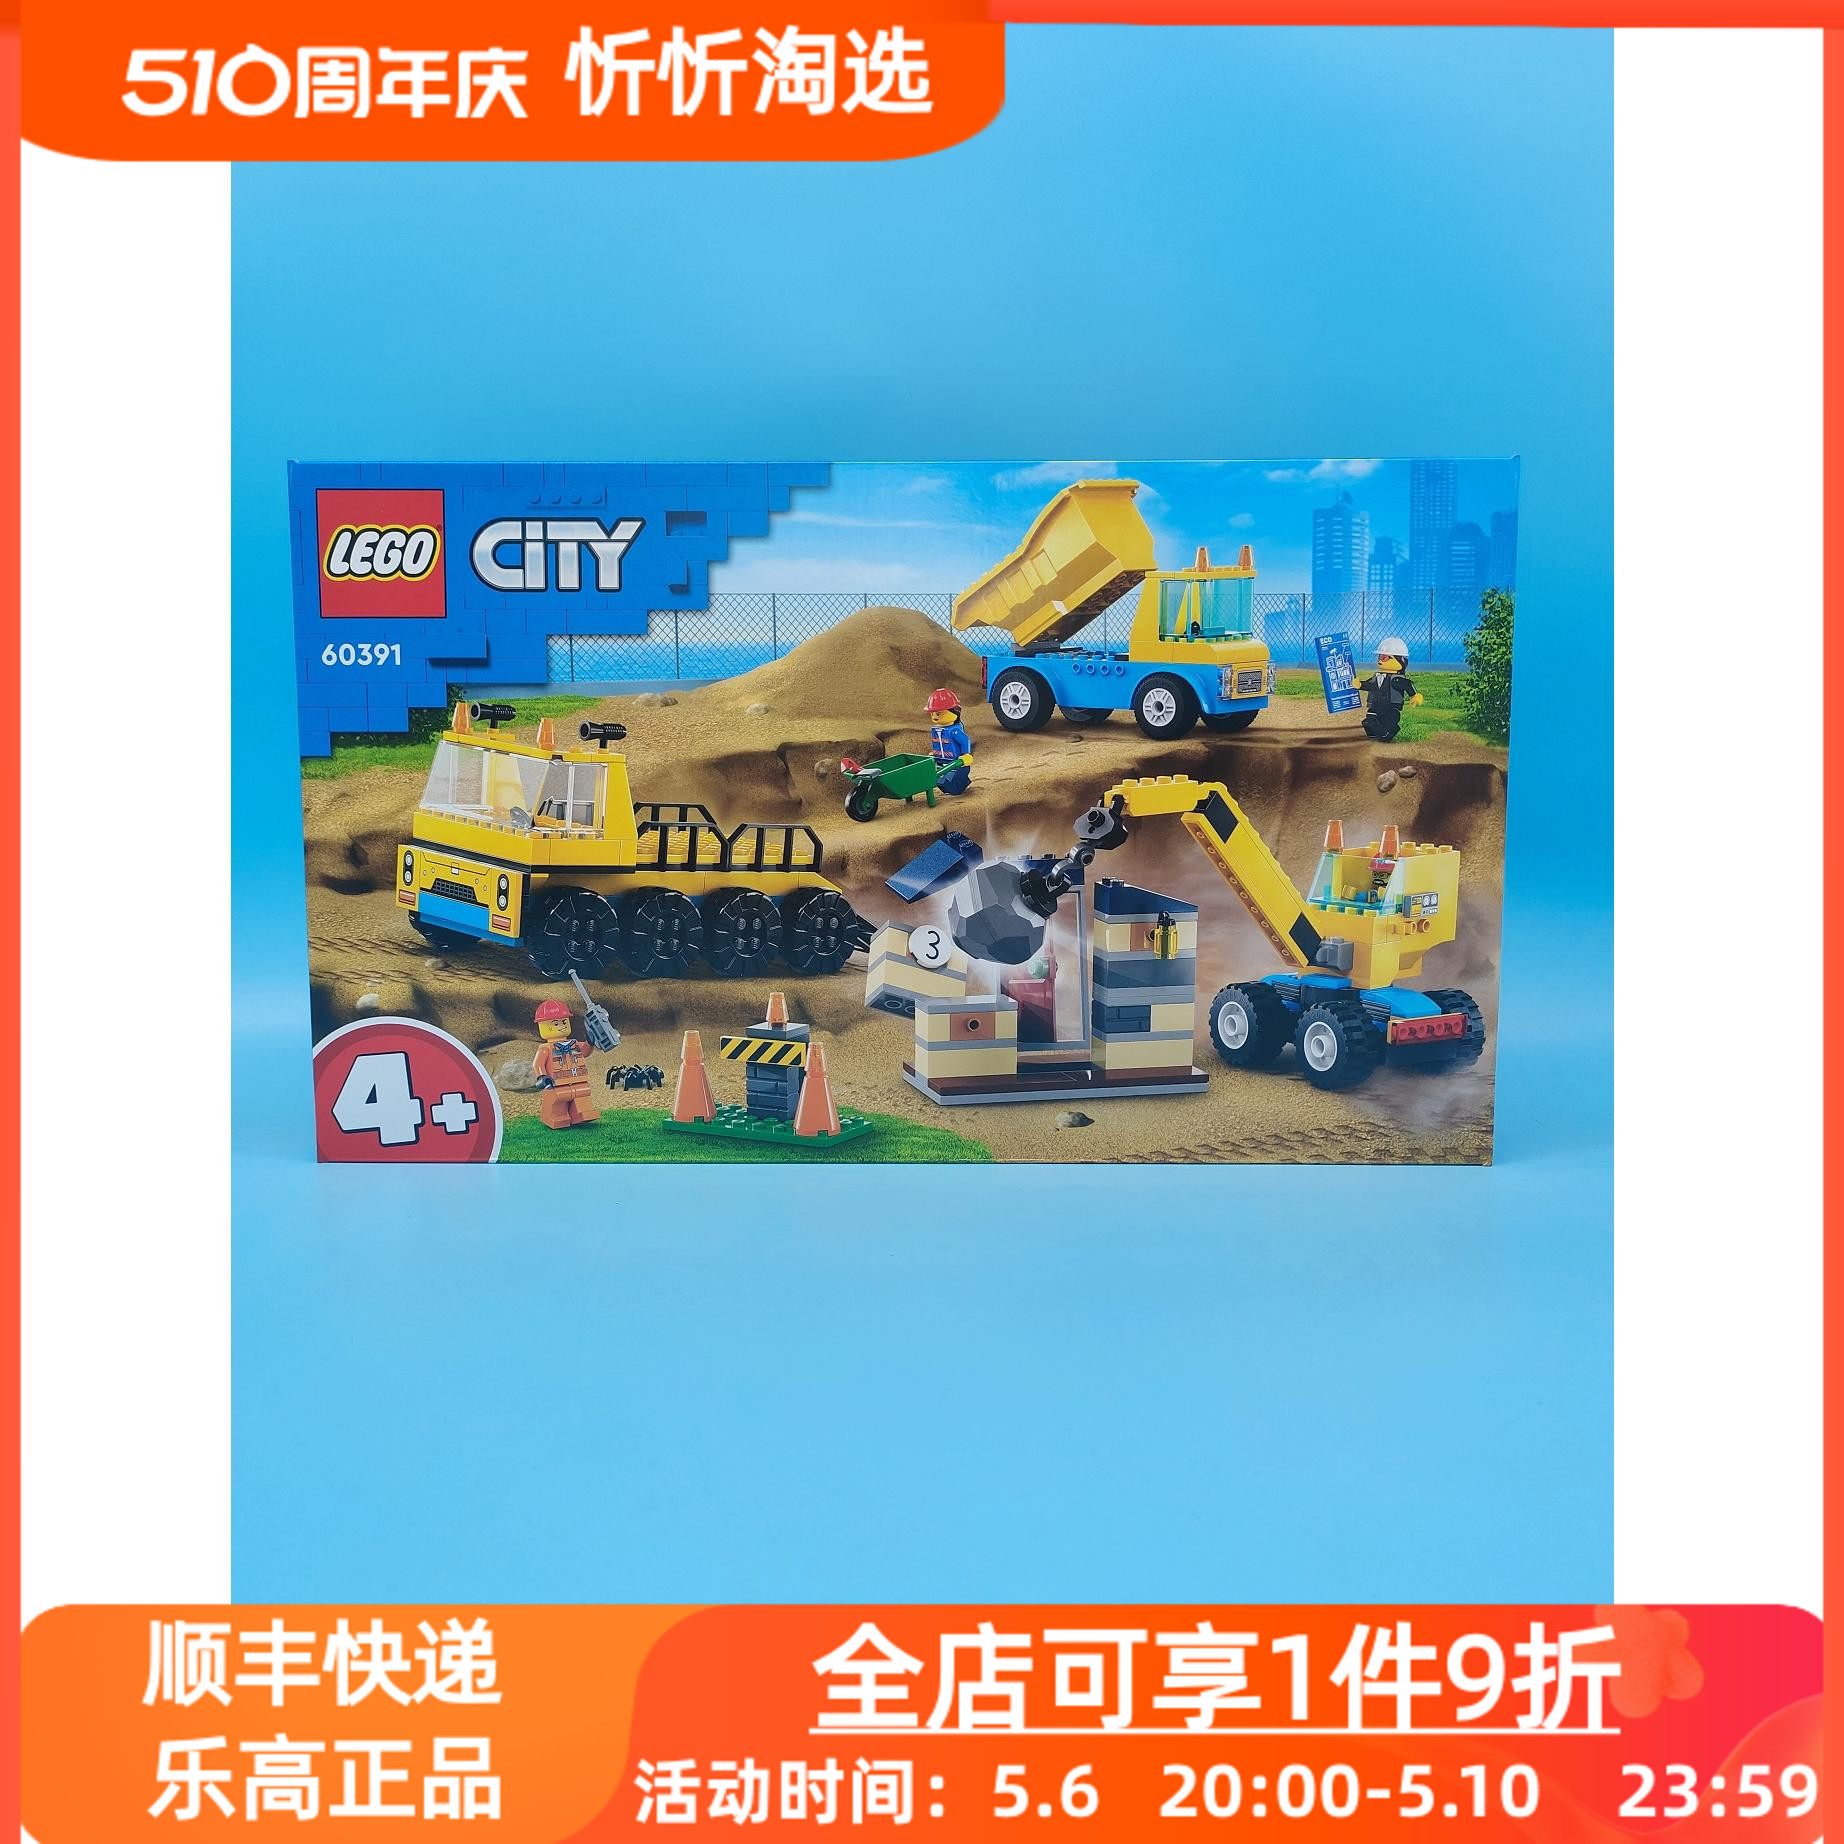 LEGO乐高城市系列60391卡车与起重机男孩益智积木玩具礼物新品